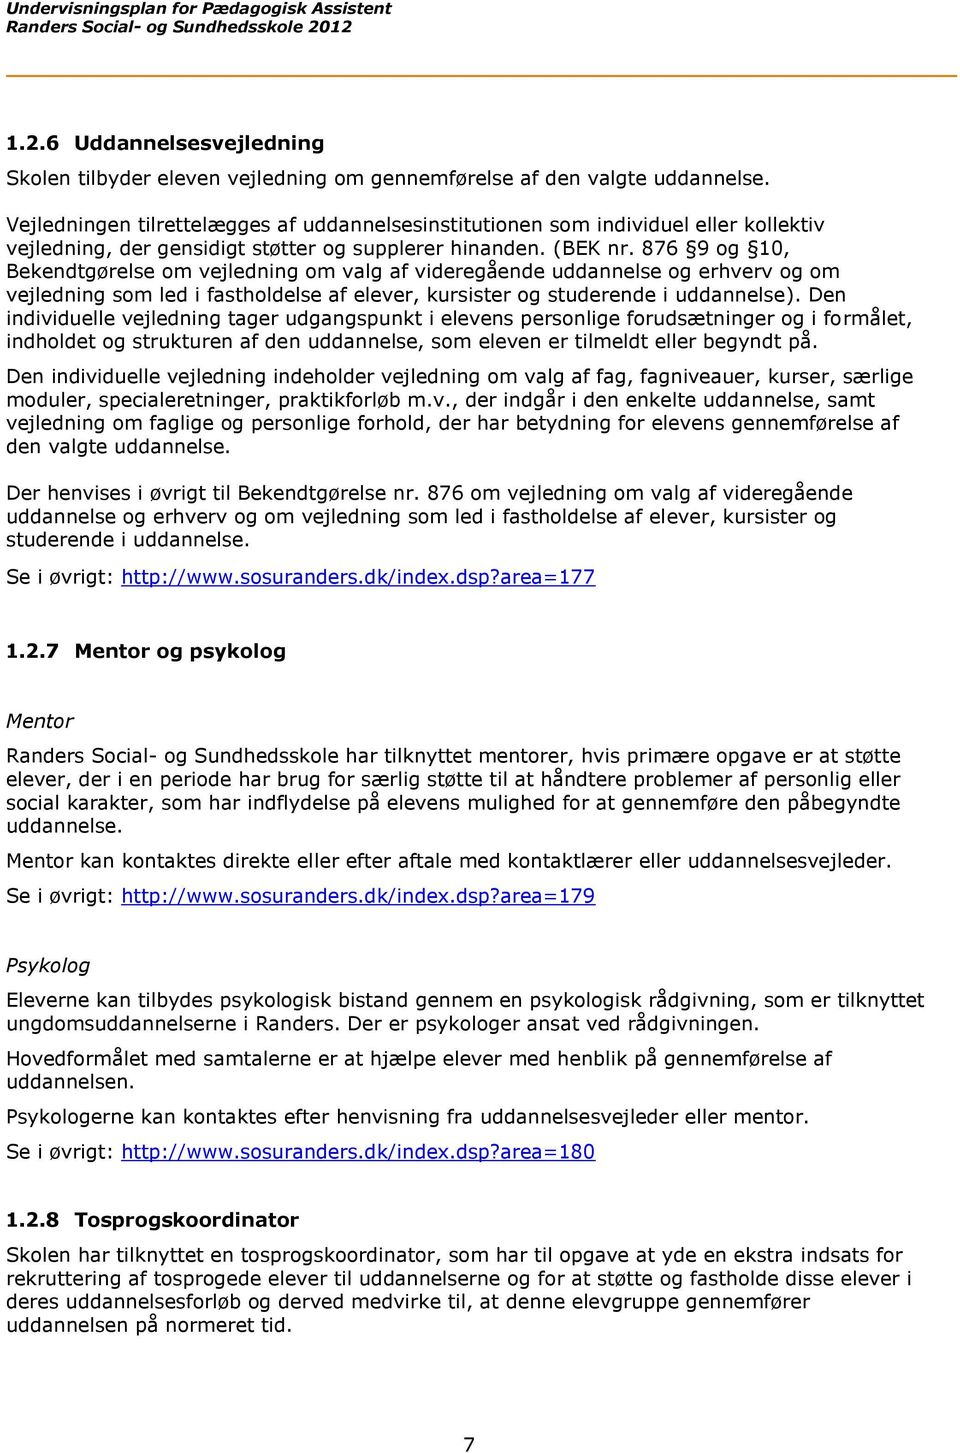 Undervisningsplan for. den pædagogiske assistentuddannelse. ved. Randers Social- og Sundhedsskole PDF Download